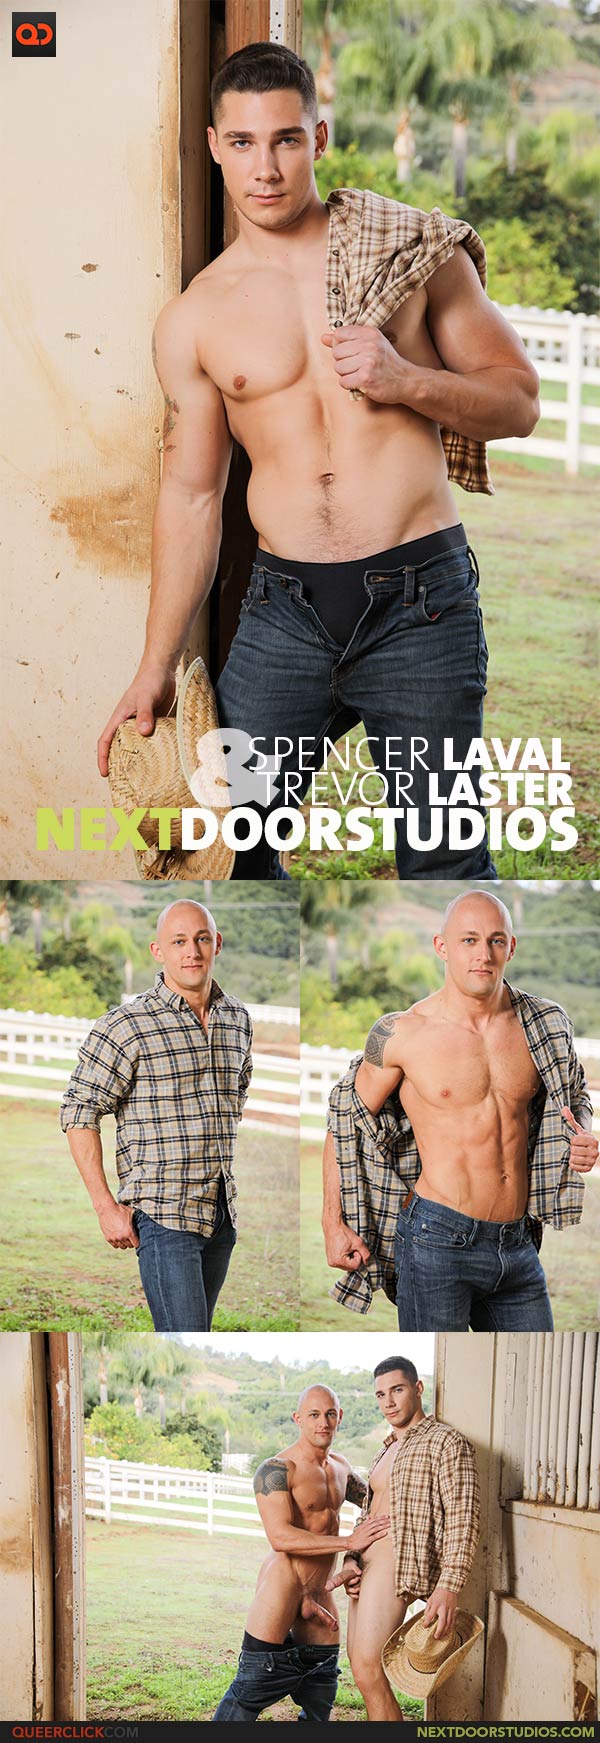 Next Door Studios:  Trevor Laster and Spencer Laval